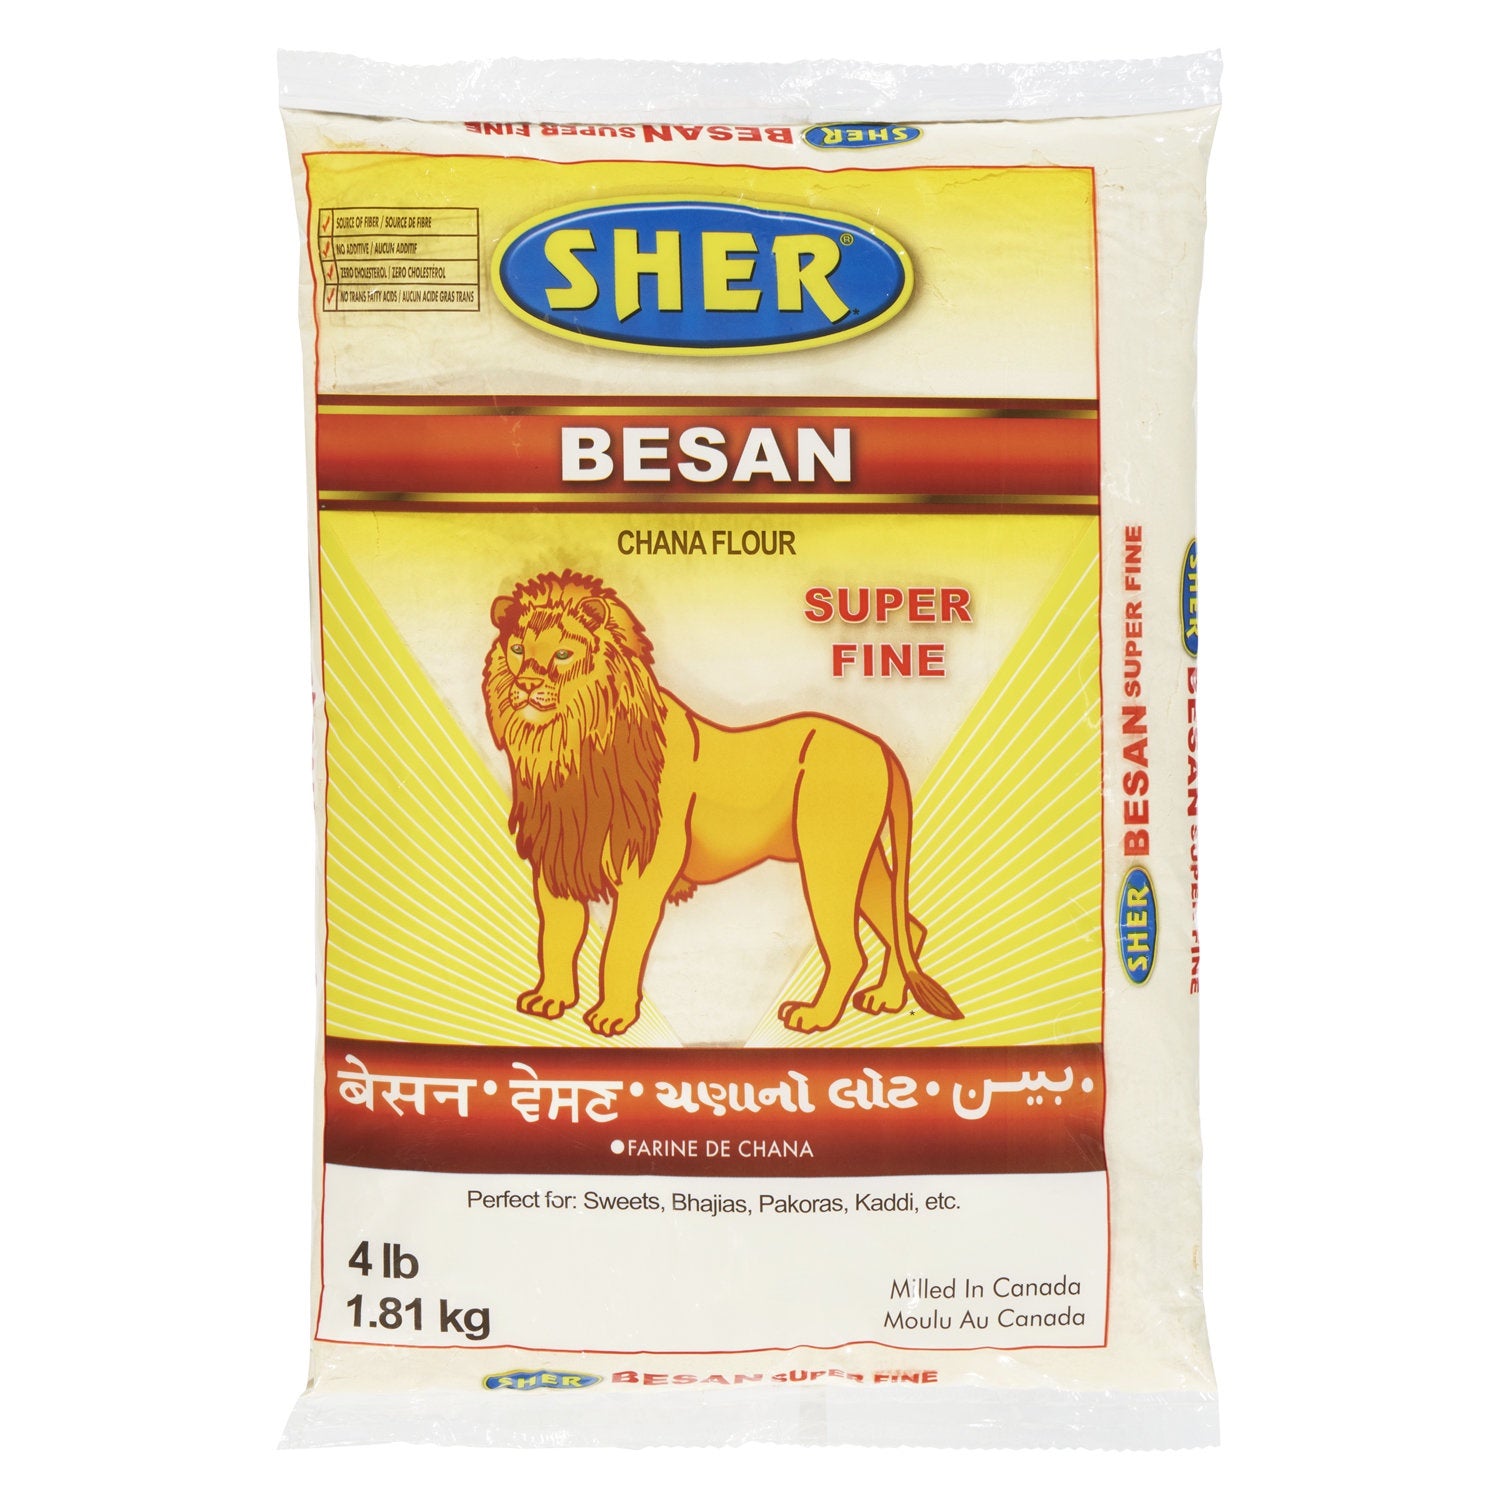 Sher - Besan Flour 4lb